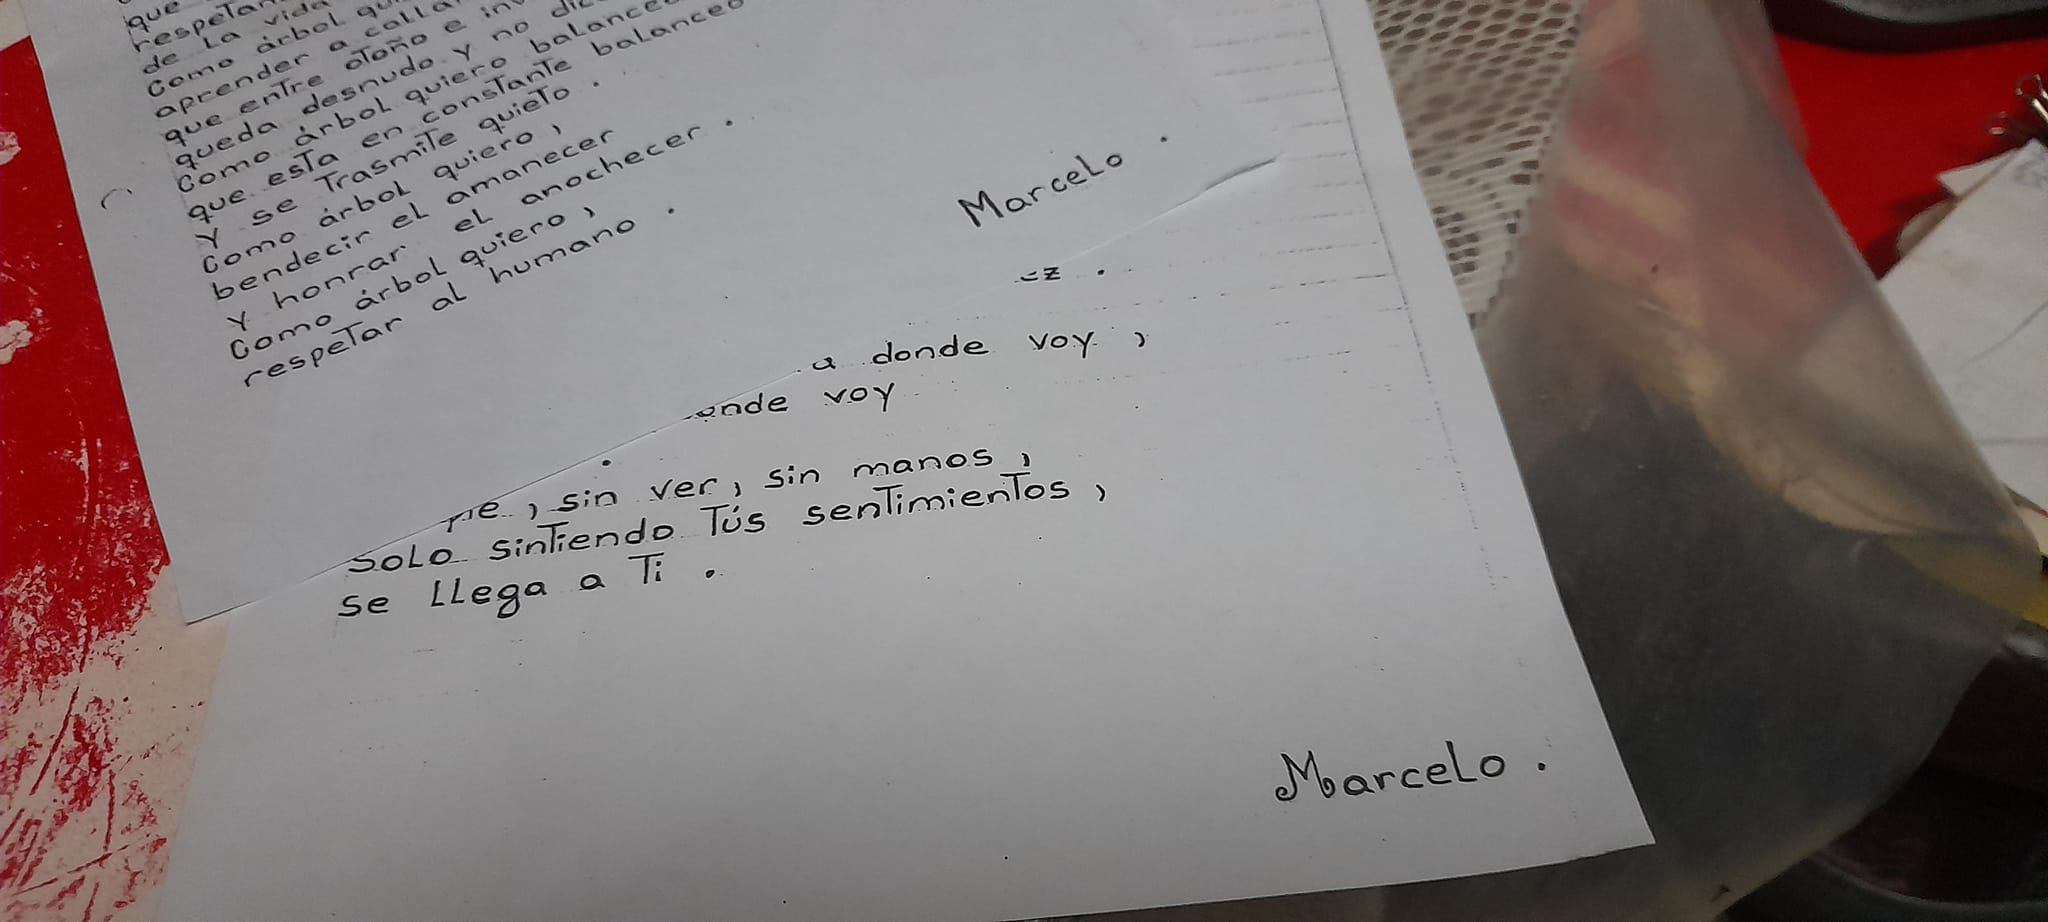 Se busca a Marcelo, el escritor de los bondis